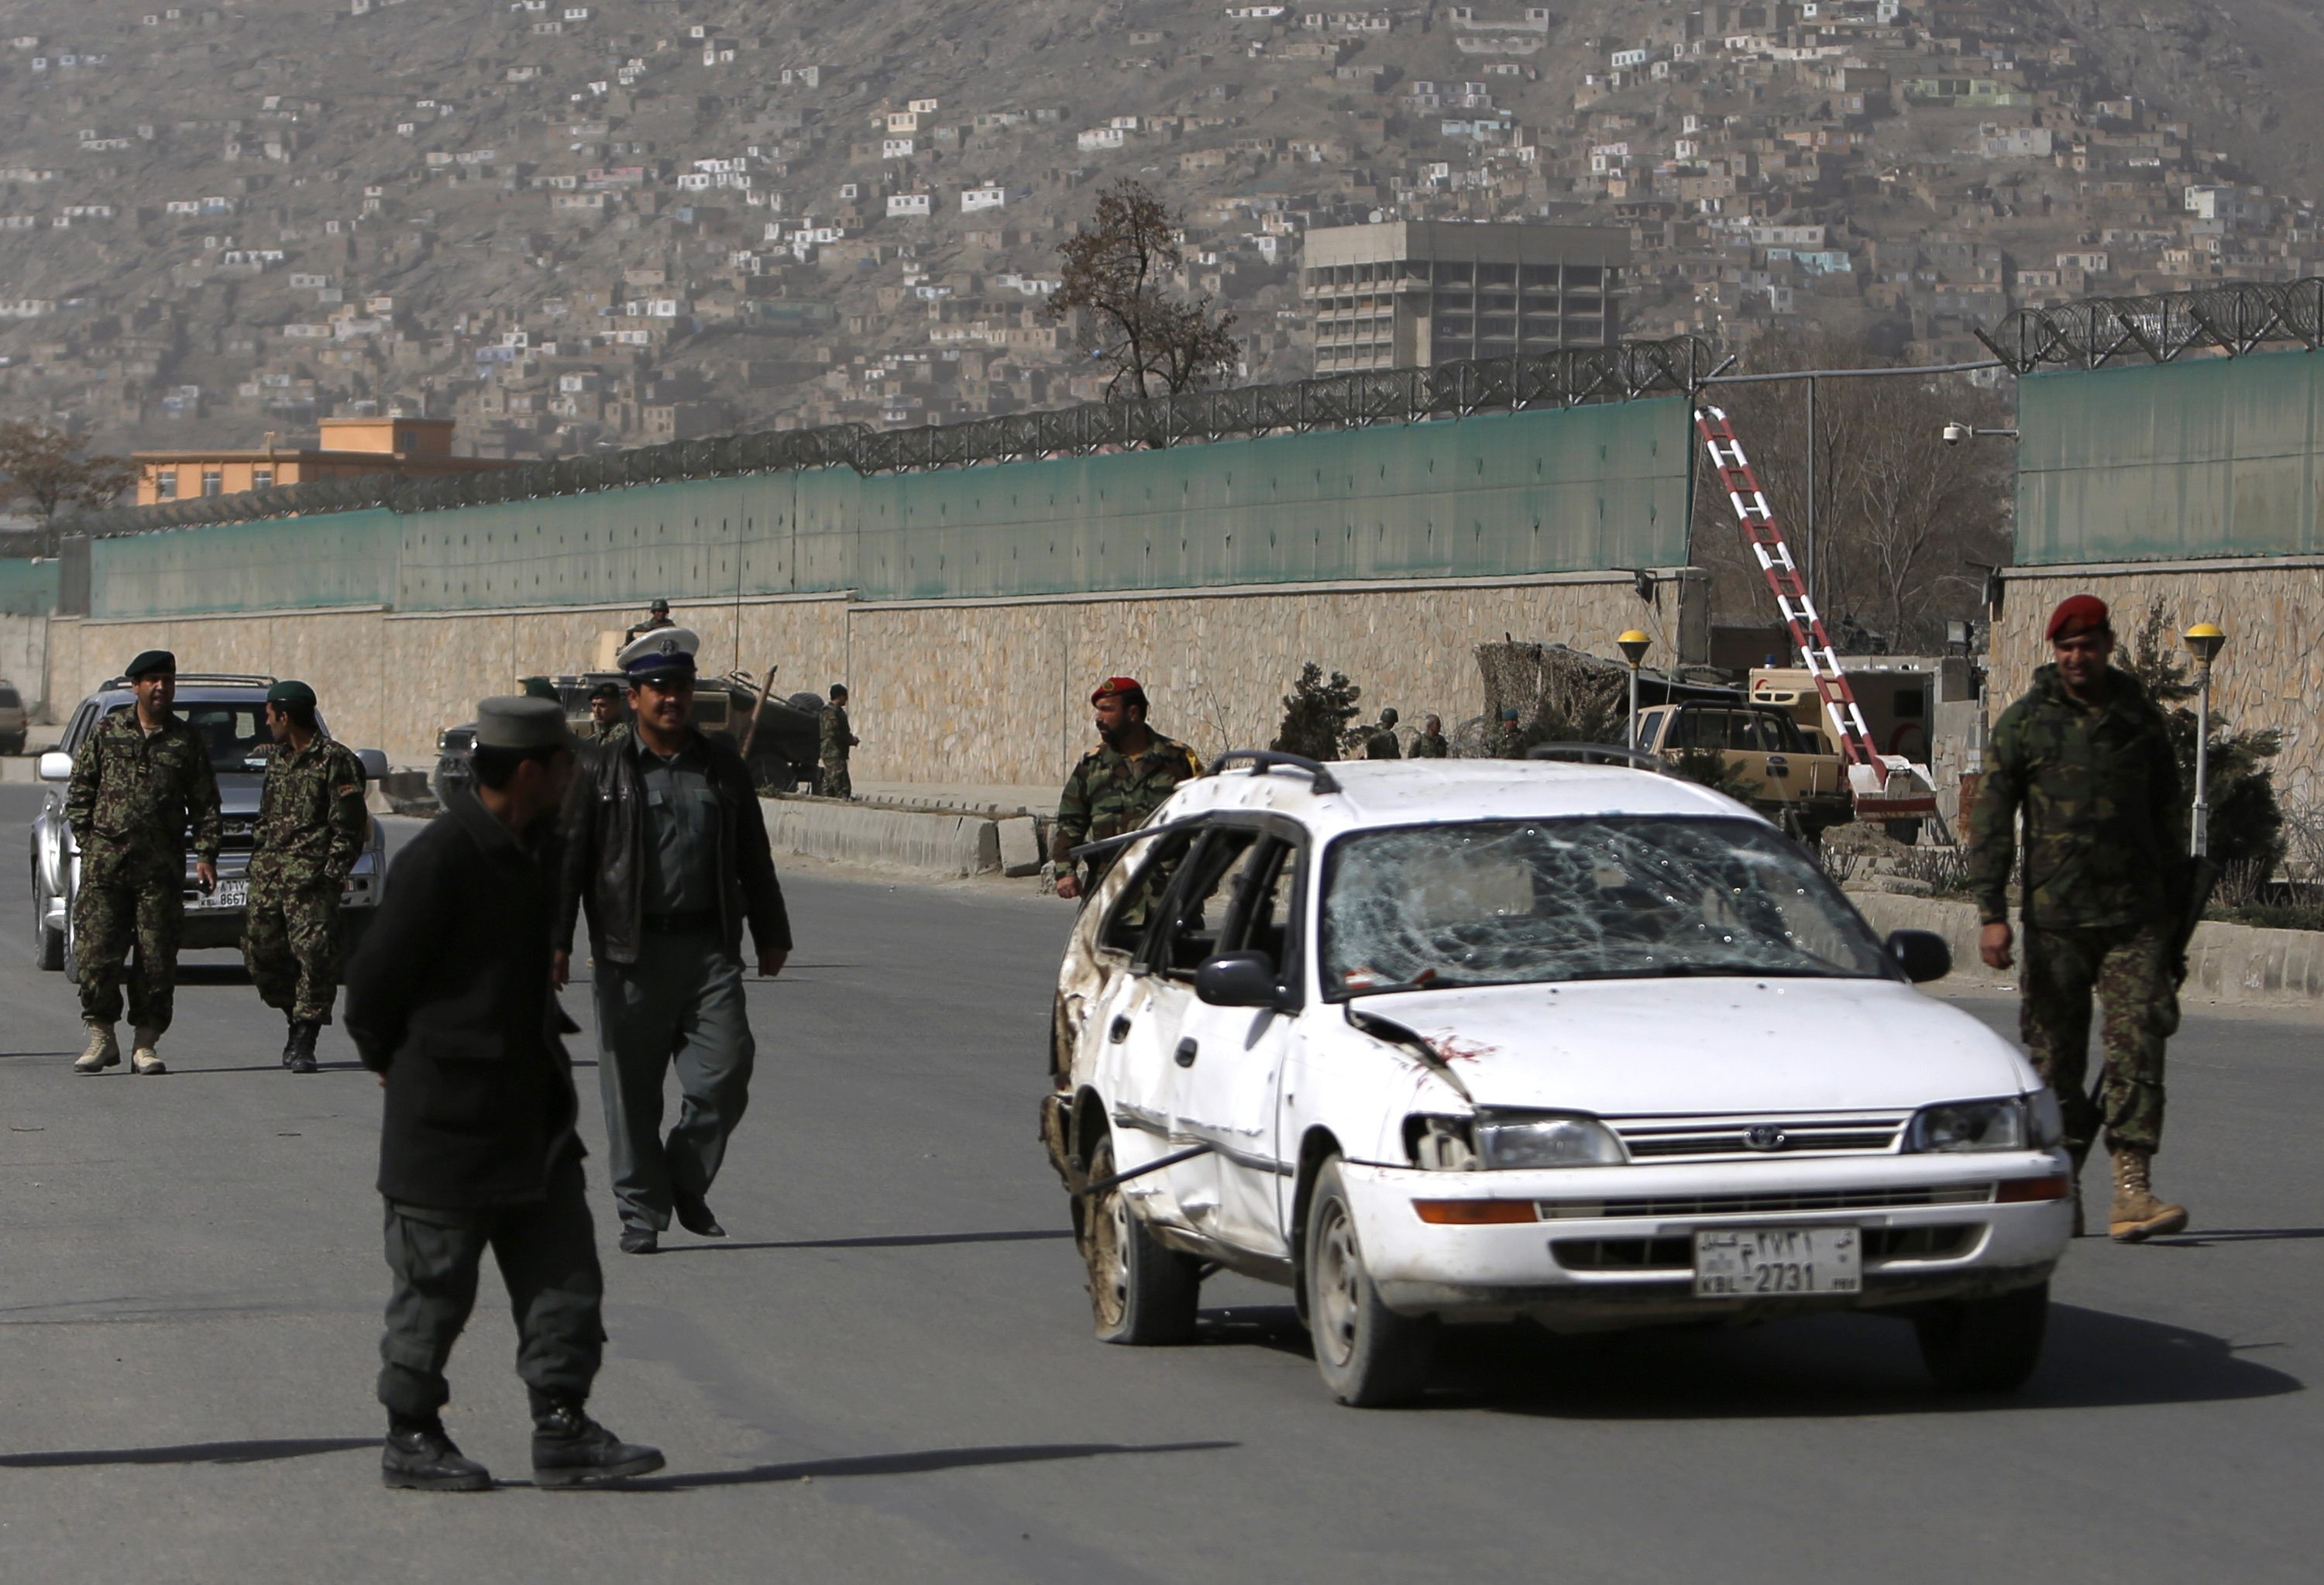 Soldados afegãoes retiram carro de área onde houve atentado com homem-bomba (Foto: Mohammad Ismail/Reuters)